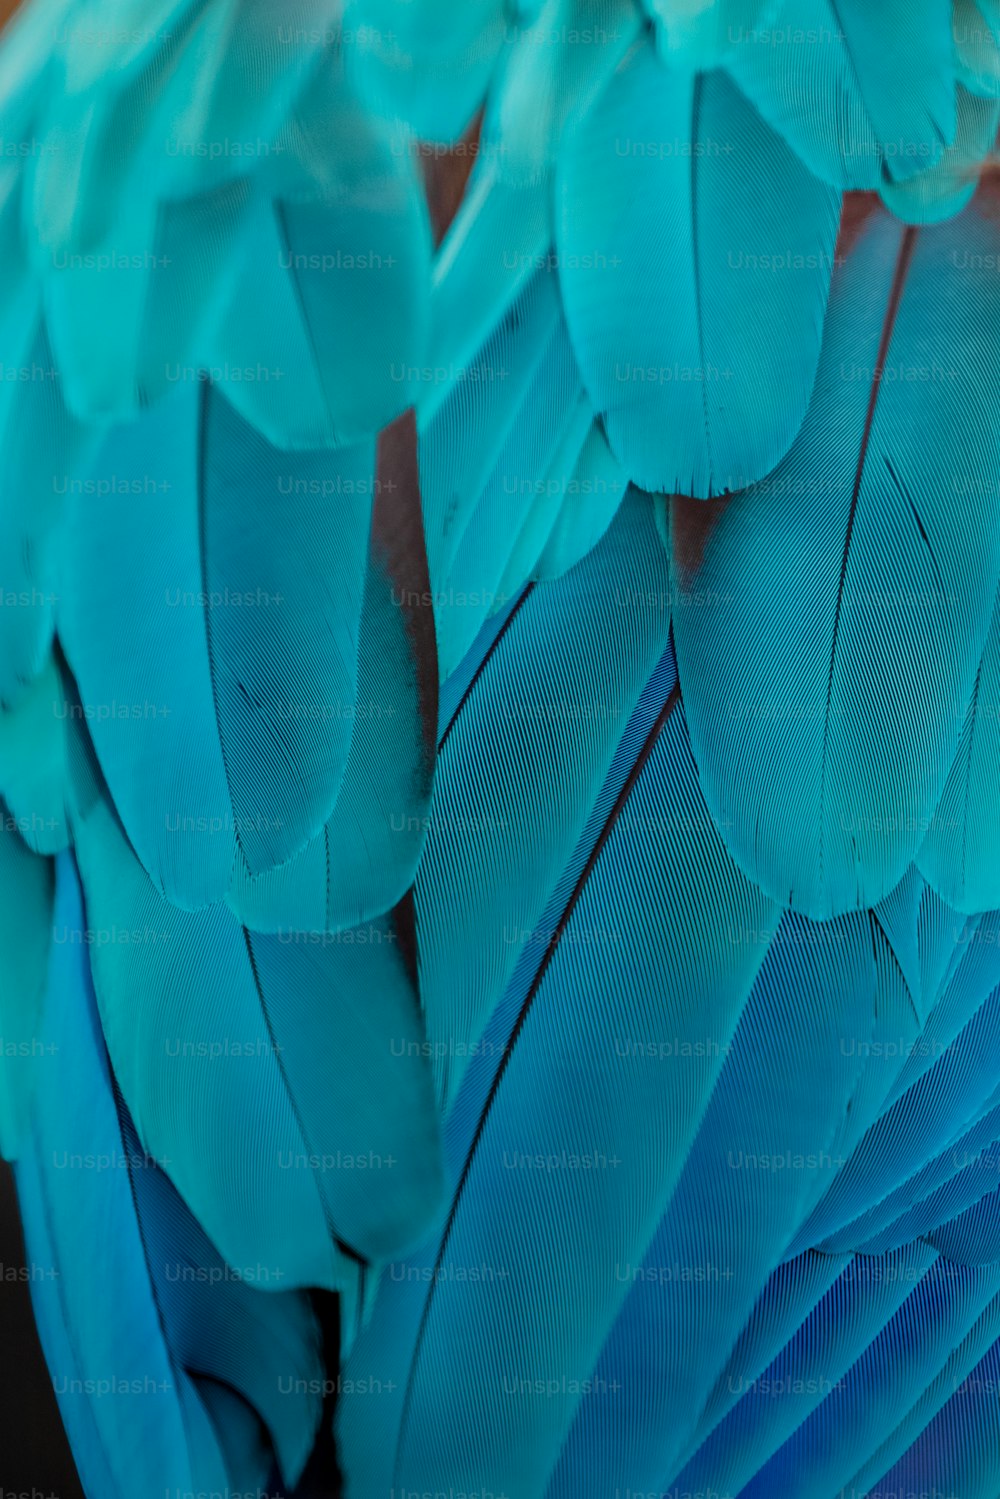 Un primer plano de las plumas de un pájaro azul